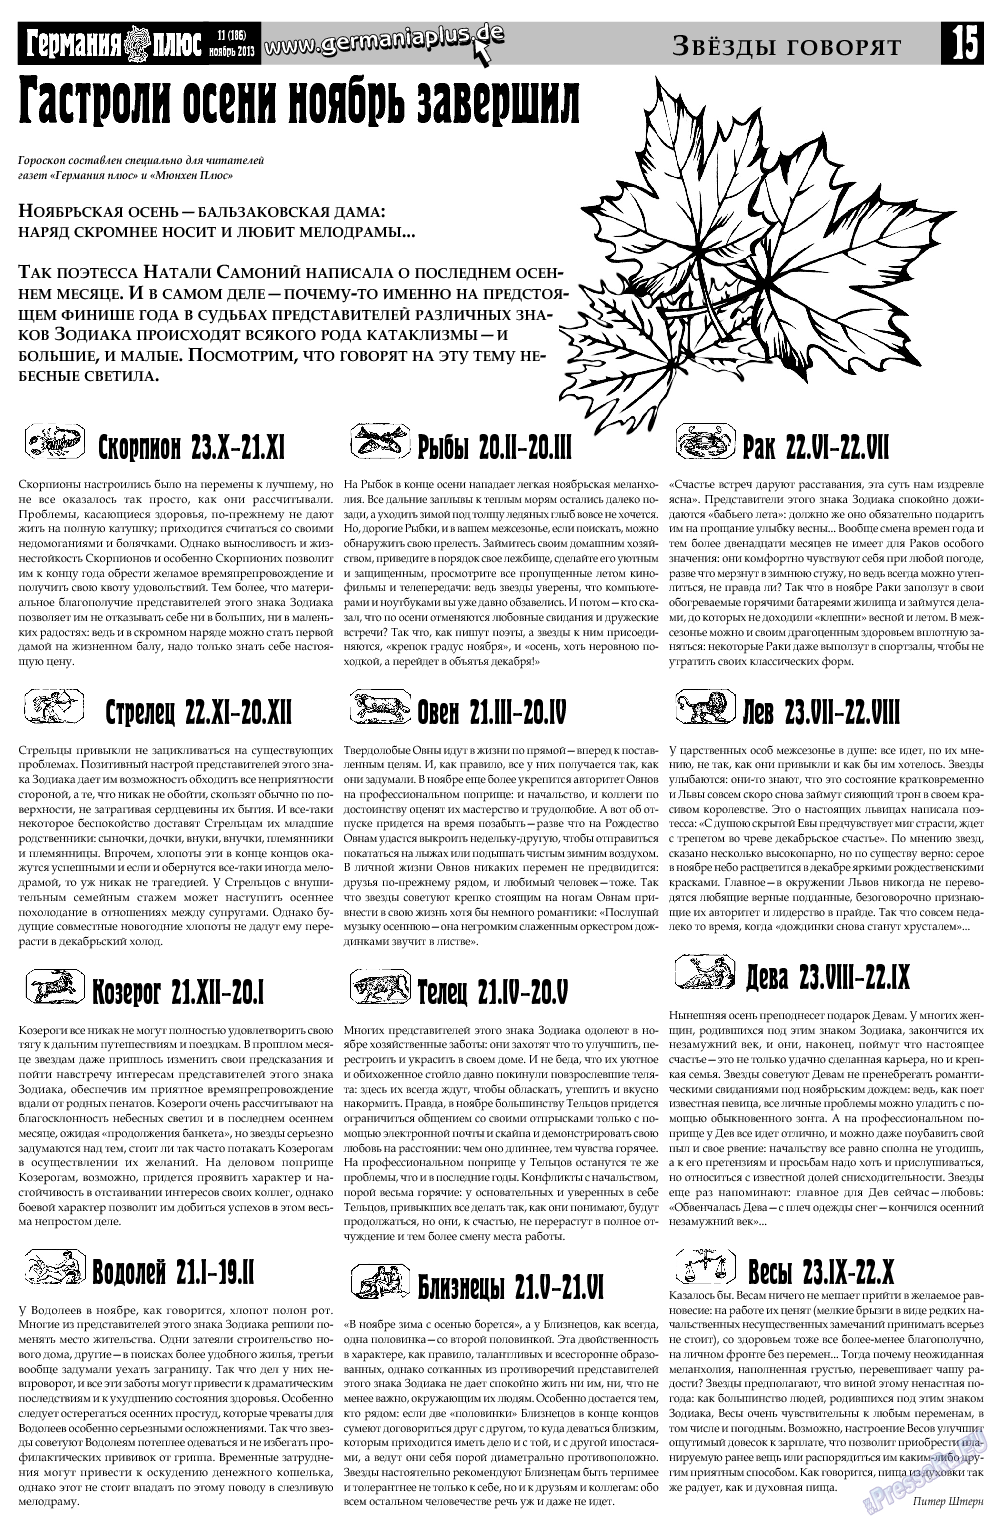 Германия плюс, газета. 2013 №11 стр.15